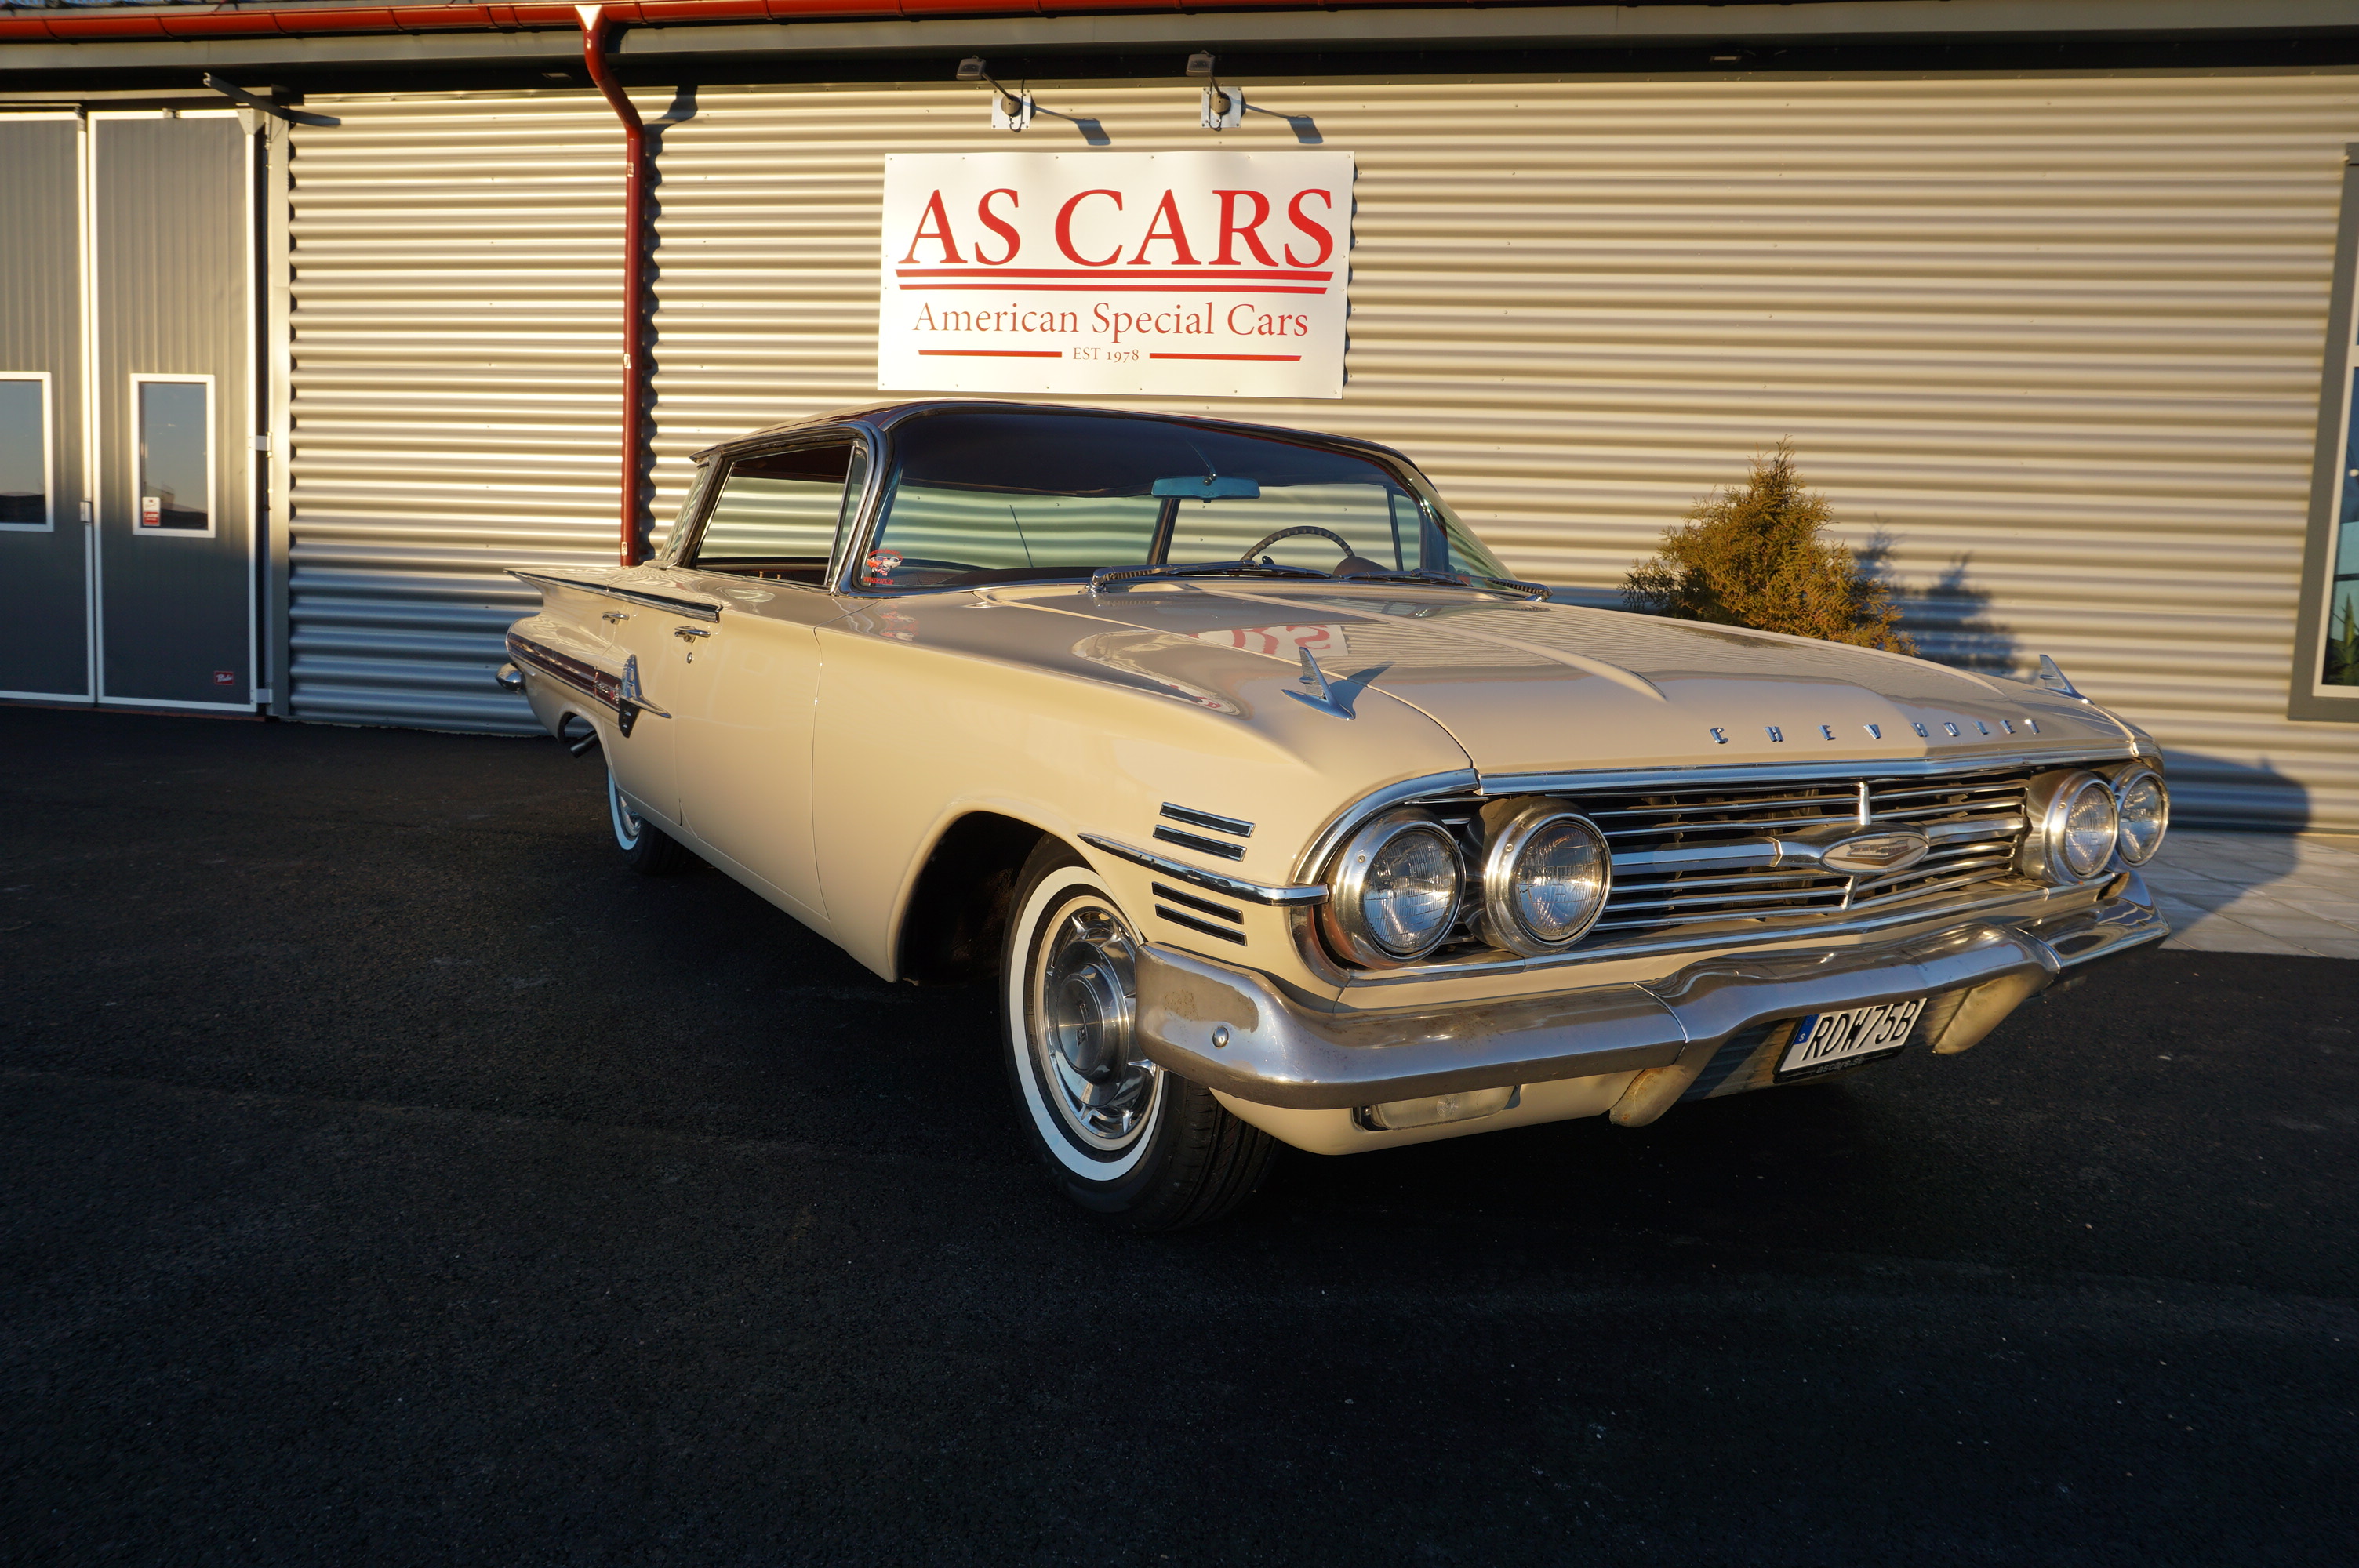 Såld

Chevrolet Impala 1960 flattop! En go originalare från norra California! Kommer till salu ring för mera info